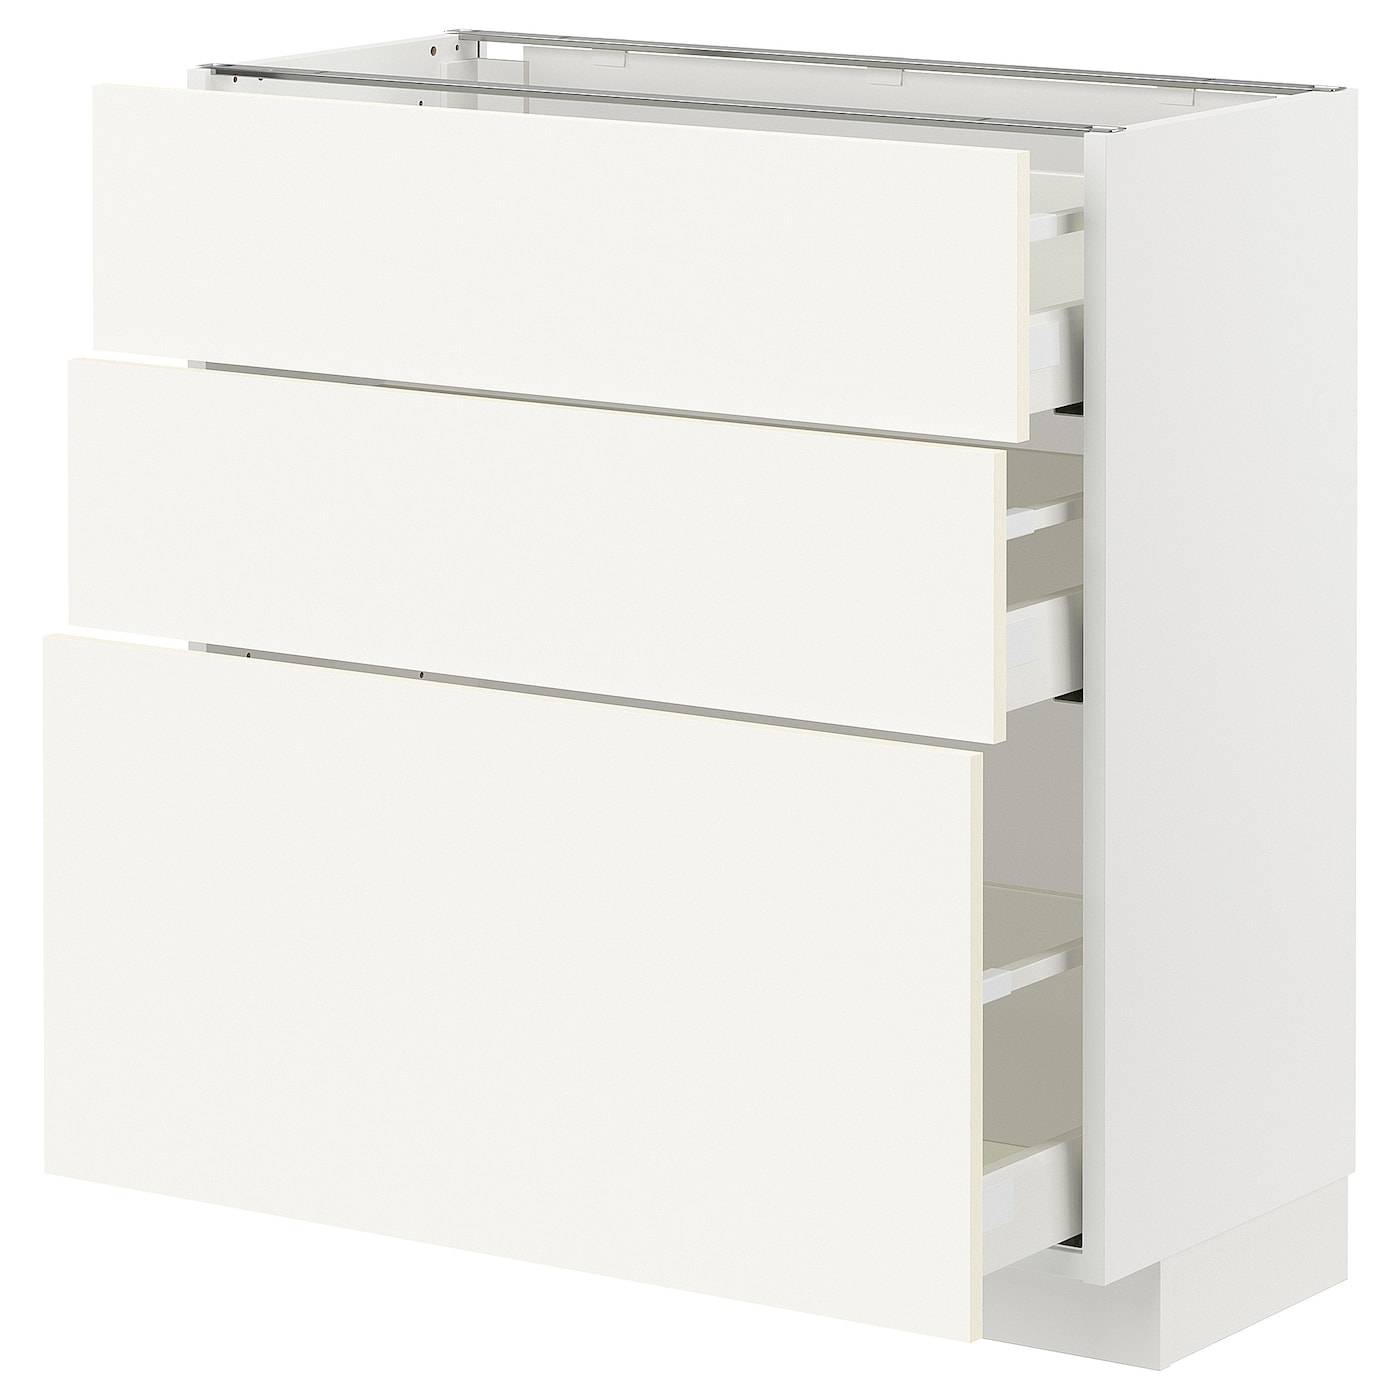 Напольный шкаф - METOD / MAXIMERA IKEA/ МЕТОД/ МАКСИМЕРА ИКЕА,  88х80 см, белый